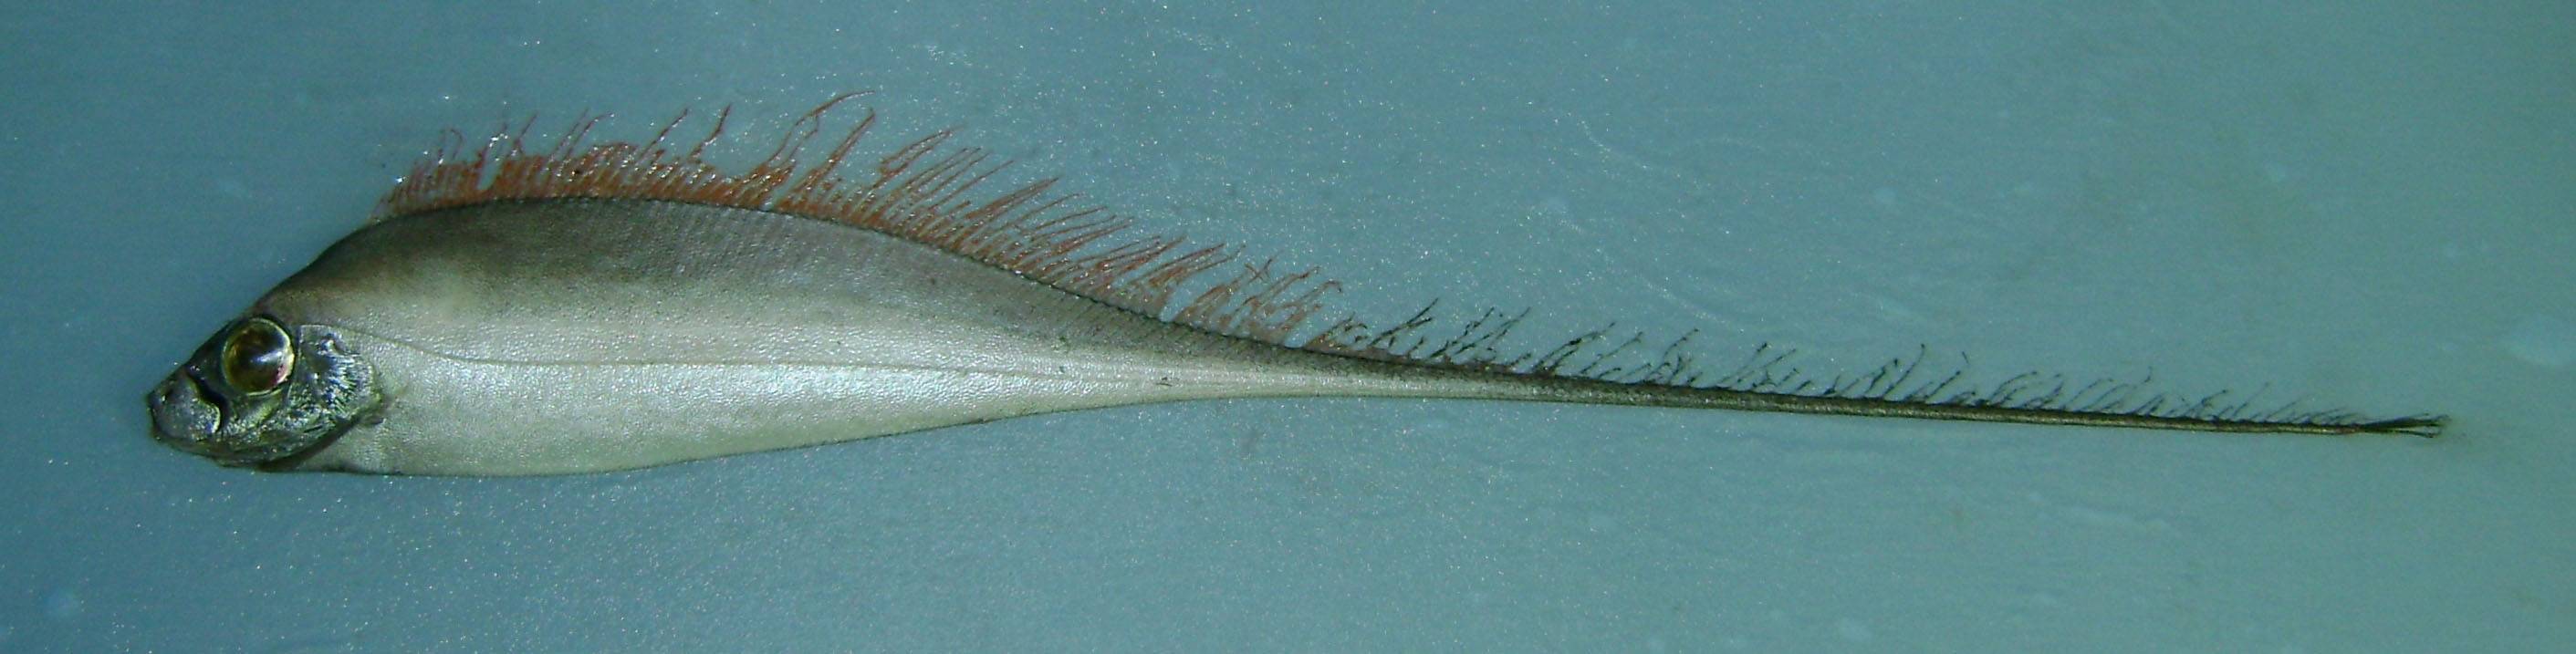 Живородящие аквариумные рыбки: список с фото и описанием